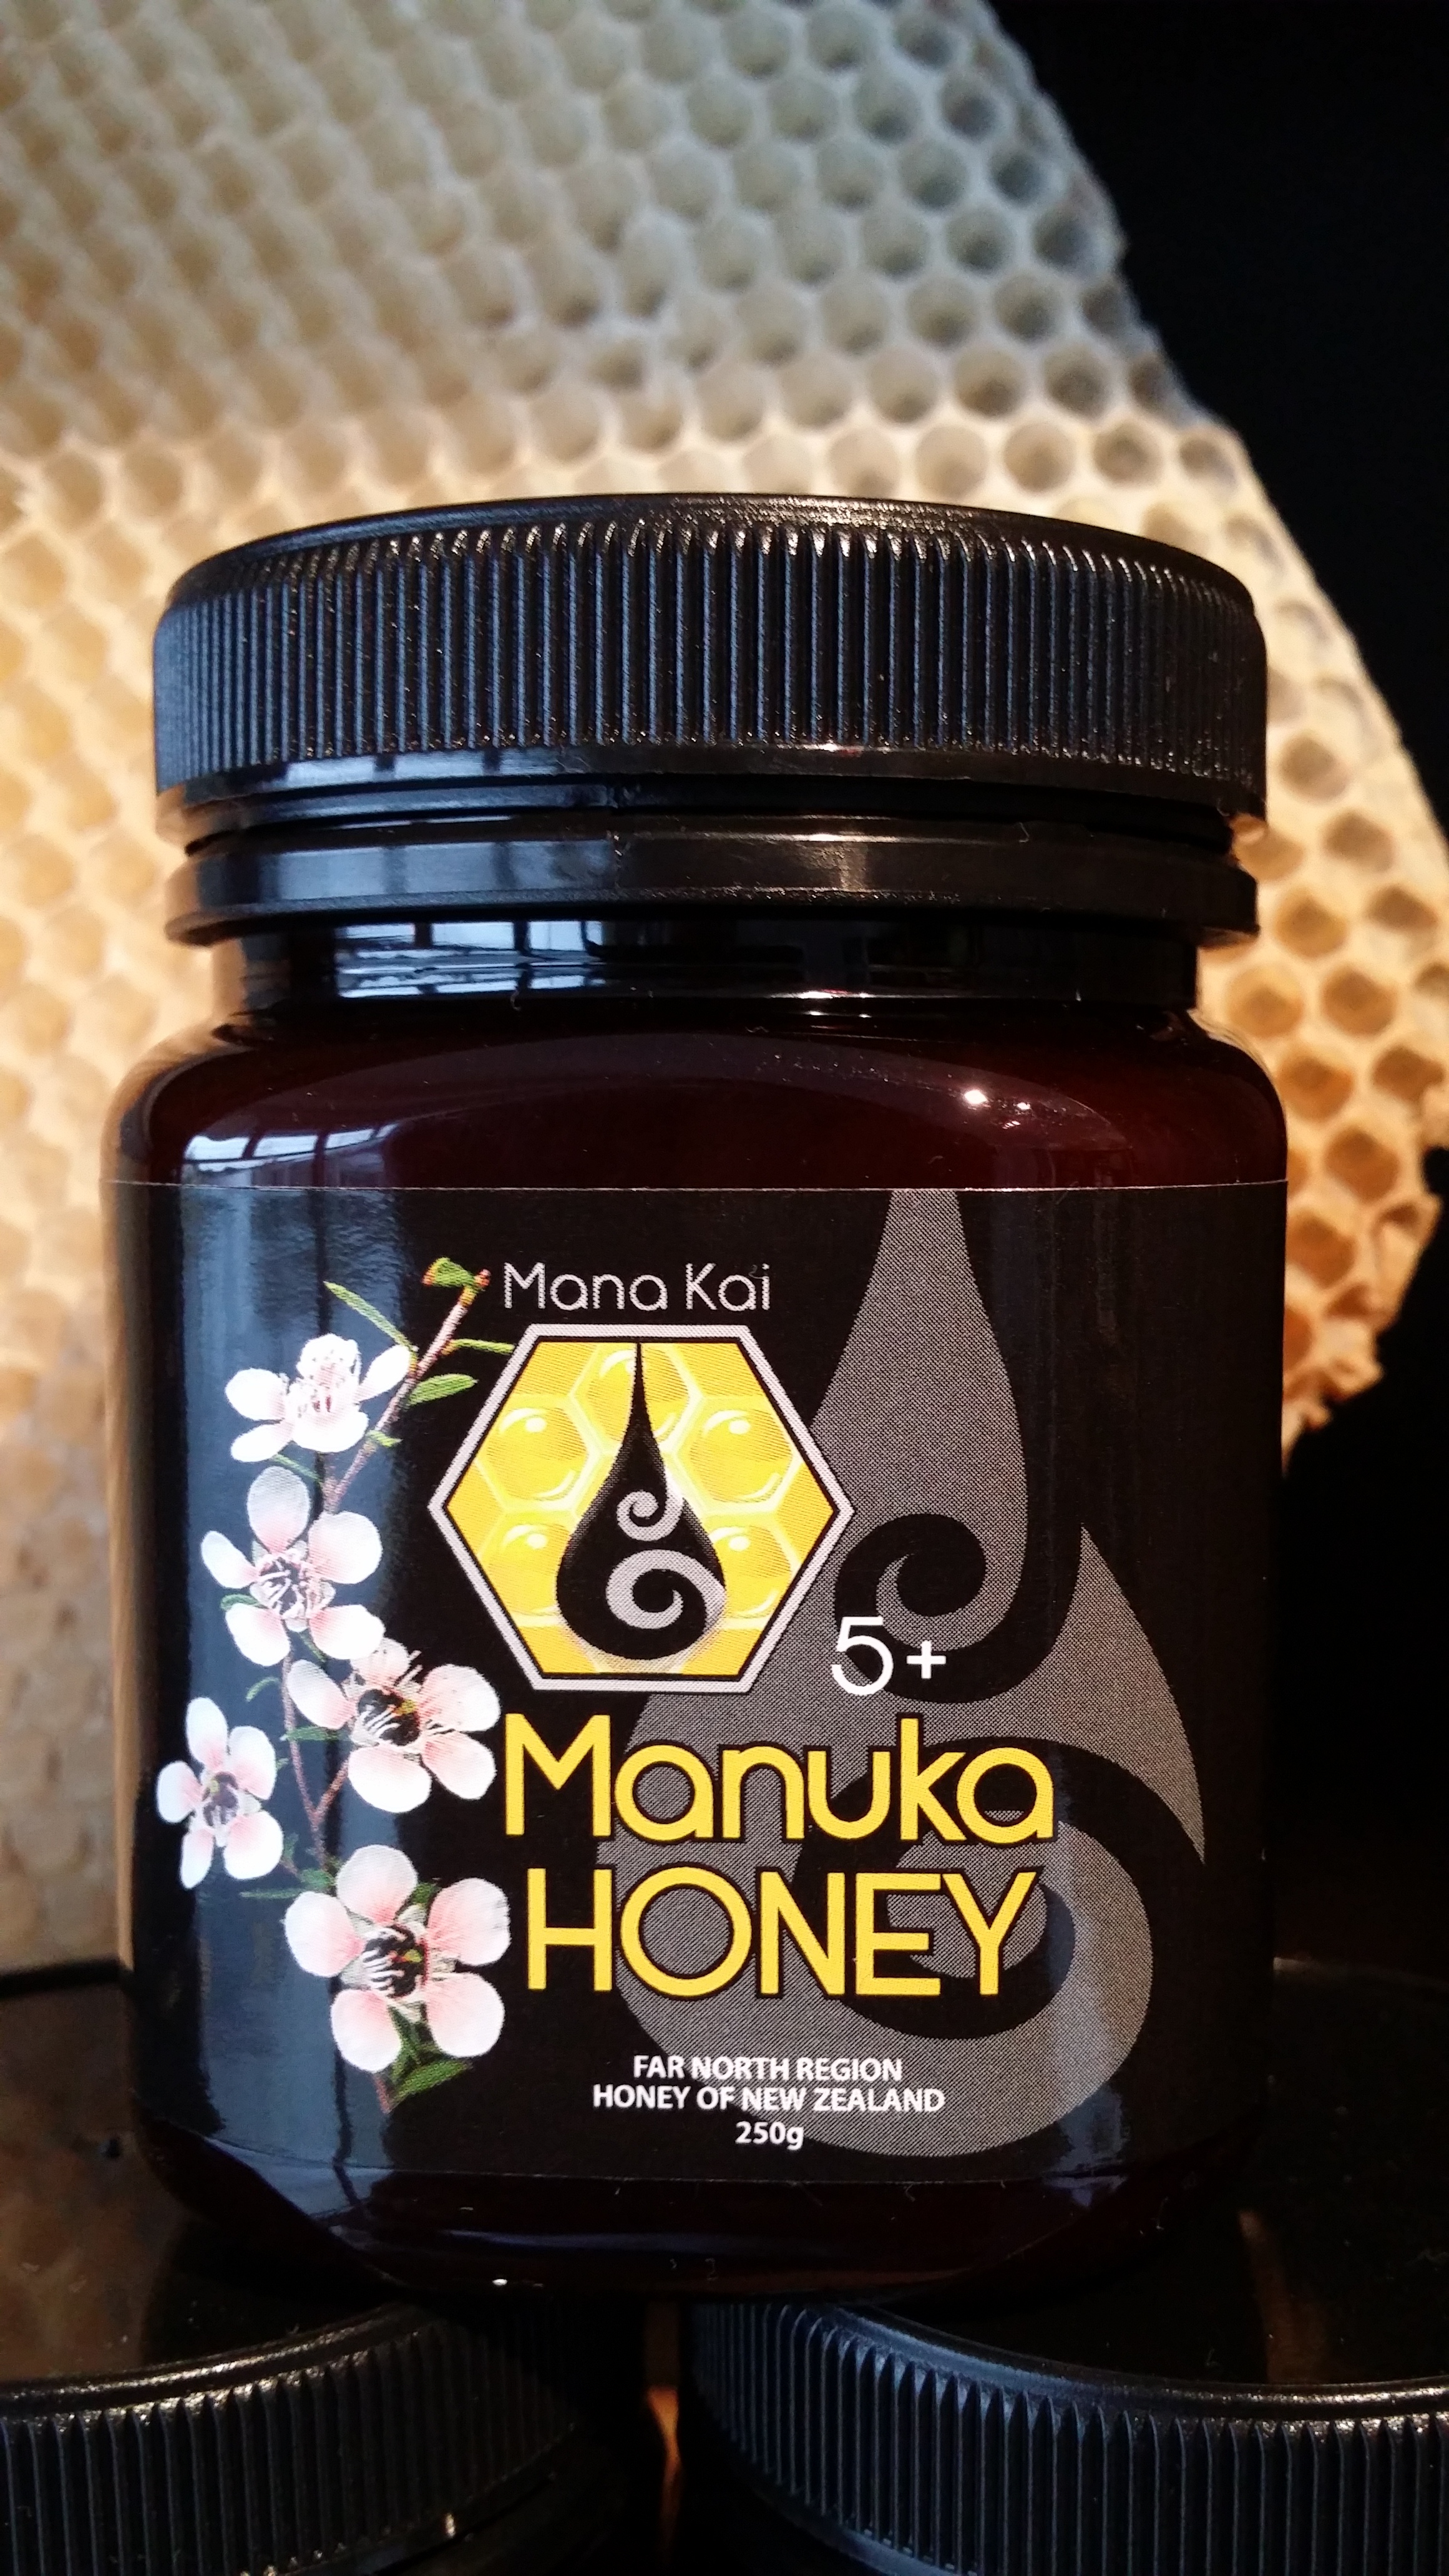 Mana Kai Honey - Manuka Honey